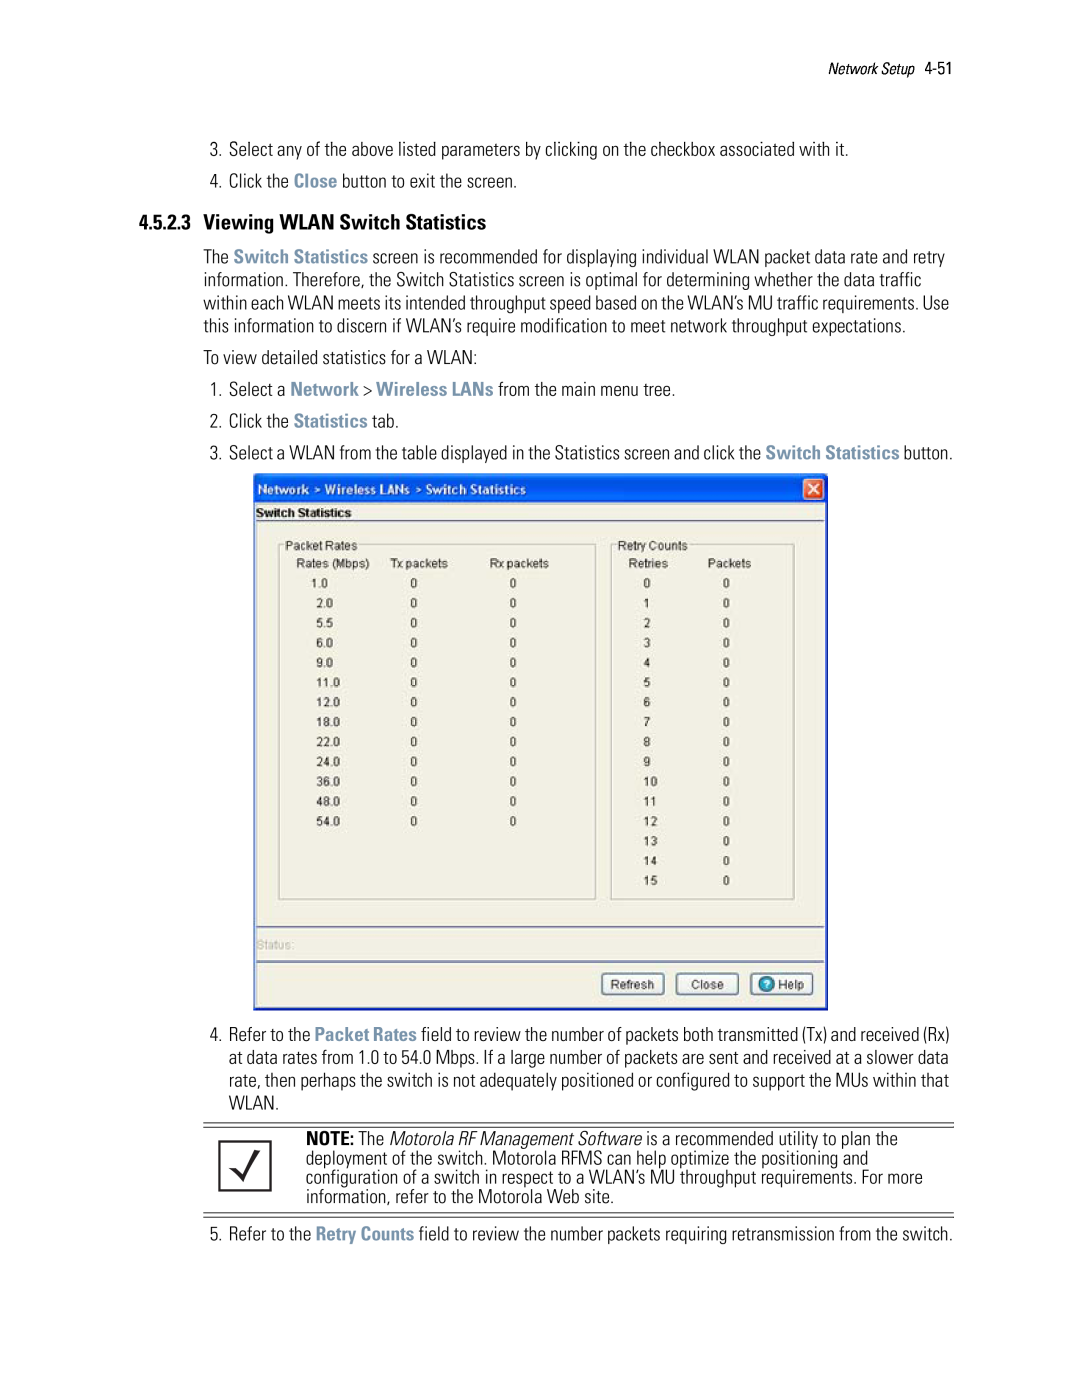 Motorola WS5100 manual 4.5.2.3Viewing WLAN Switch Statistics 